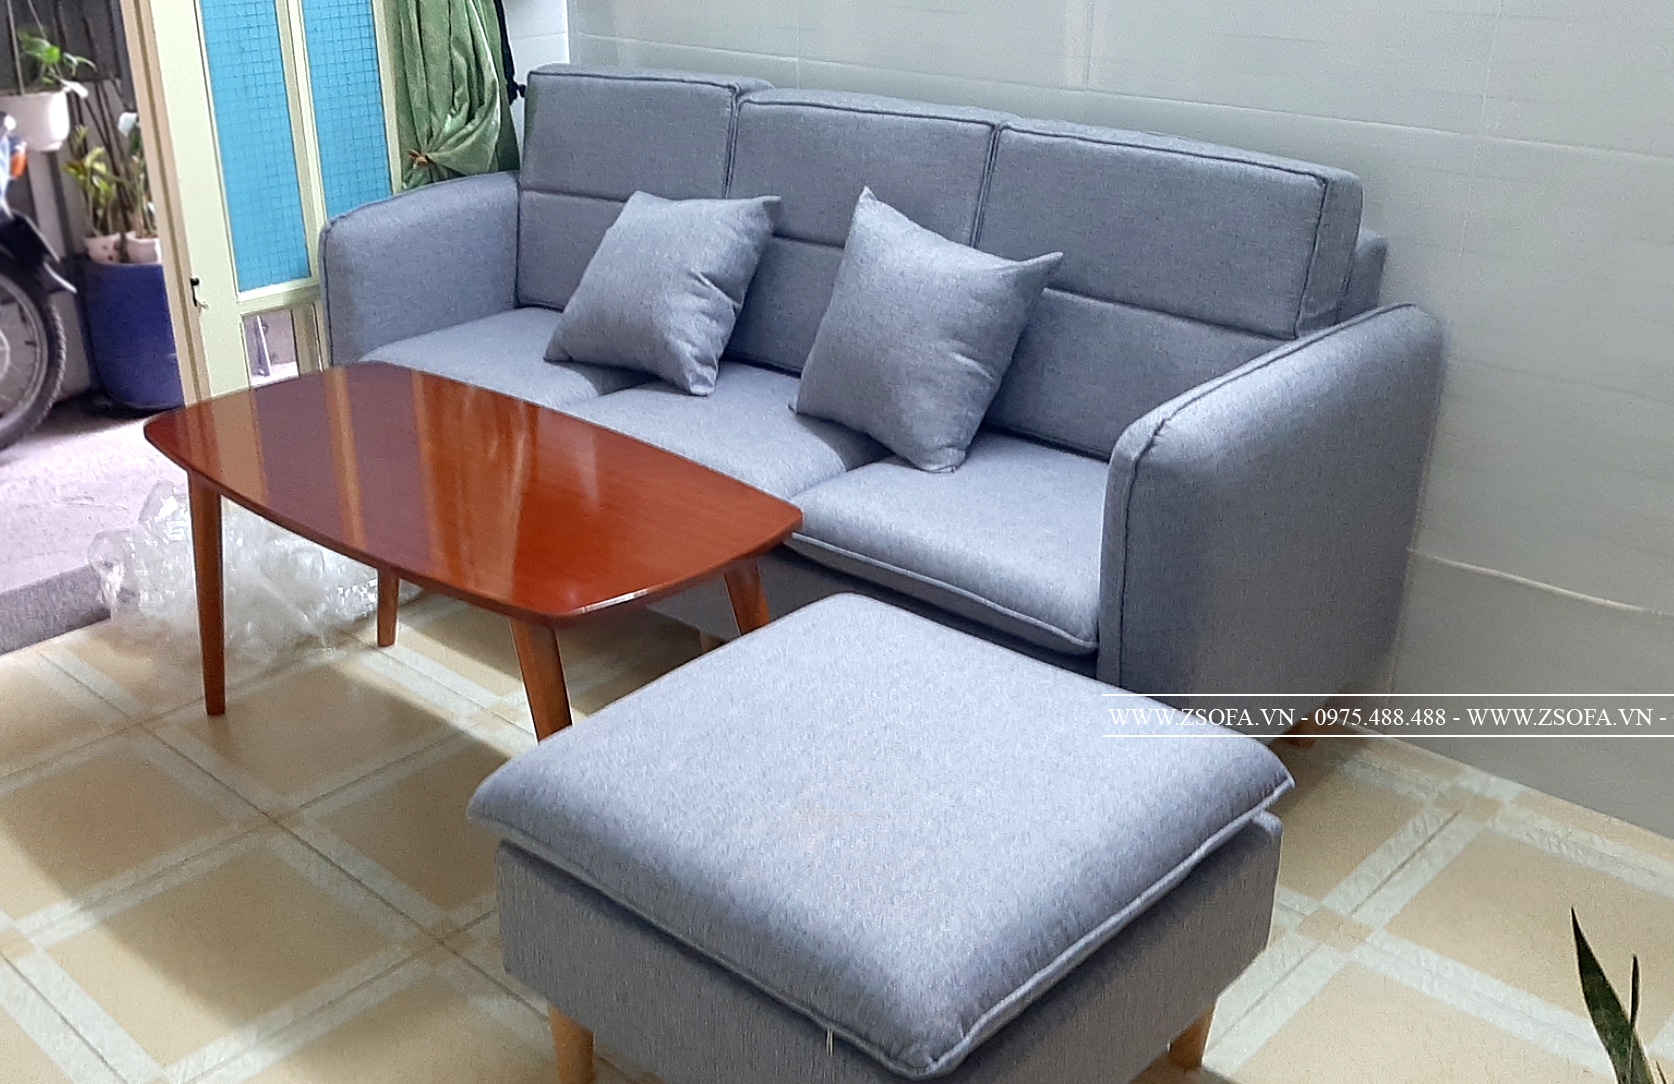 zSofa - địa chỉ bán ghế sofa hiện đại uy tín